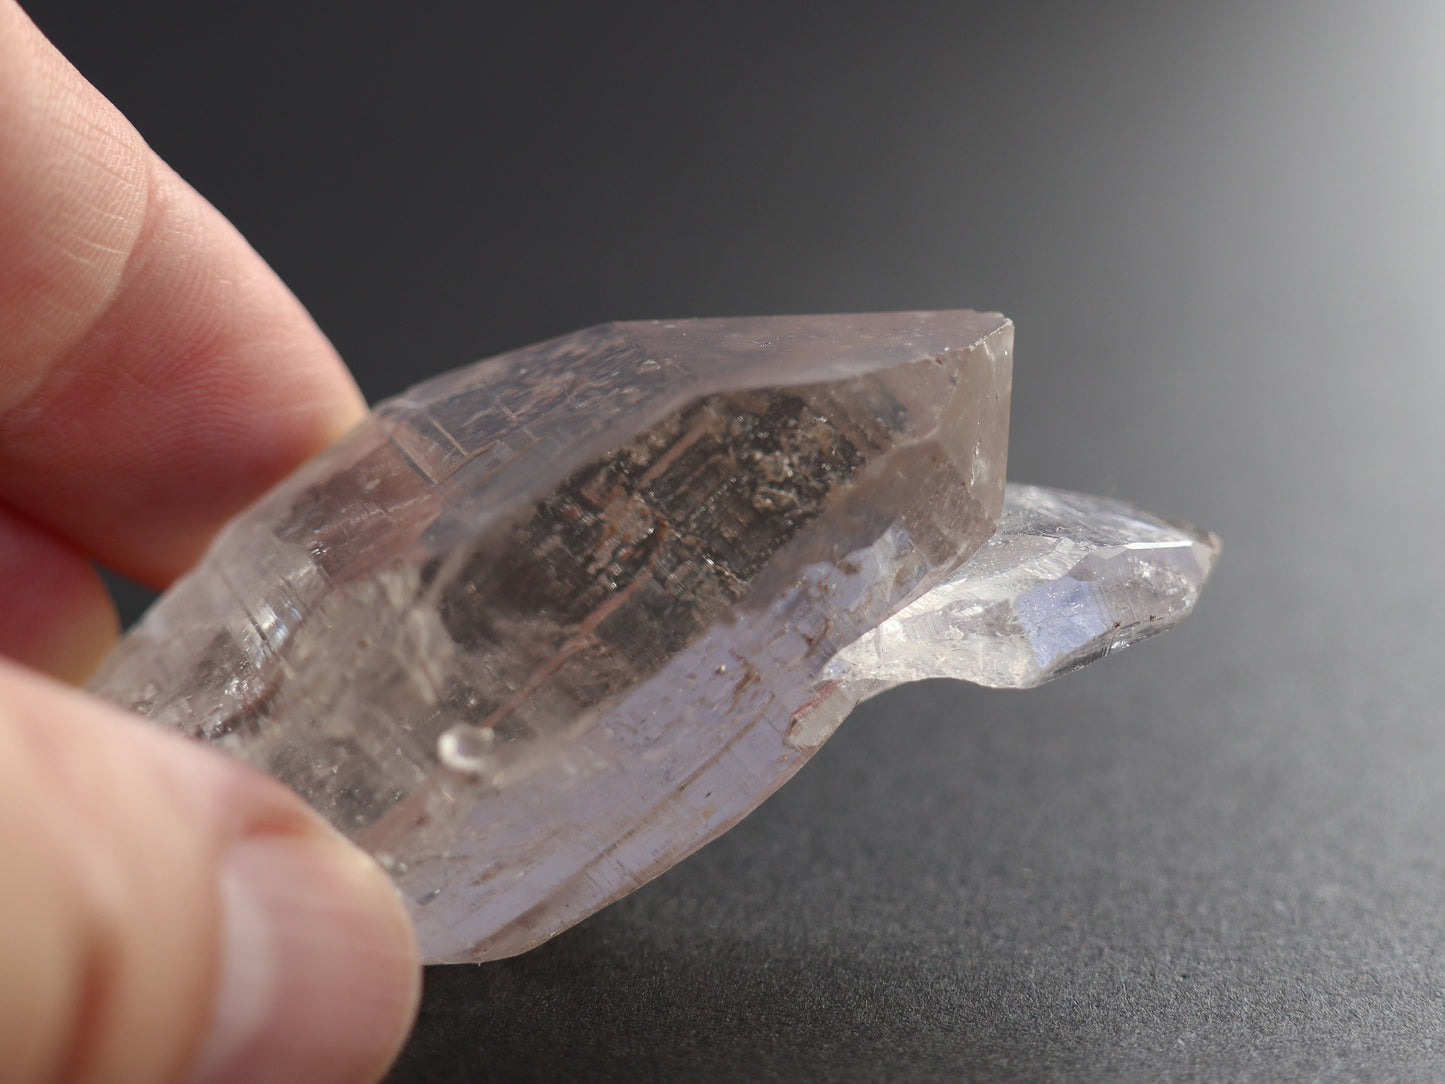 ガネーシュヒマール産ヒマラヤ水晶ダブルポイント、レコードキーパー原石PN:GG-161